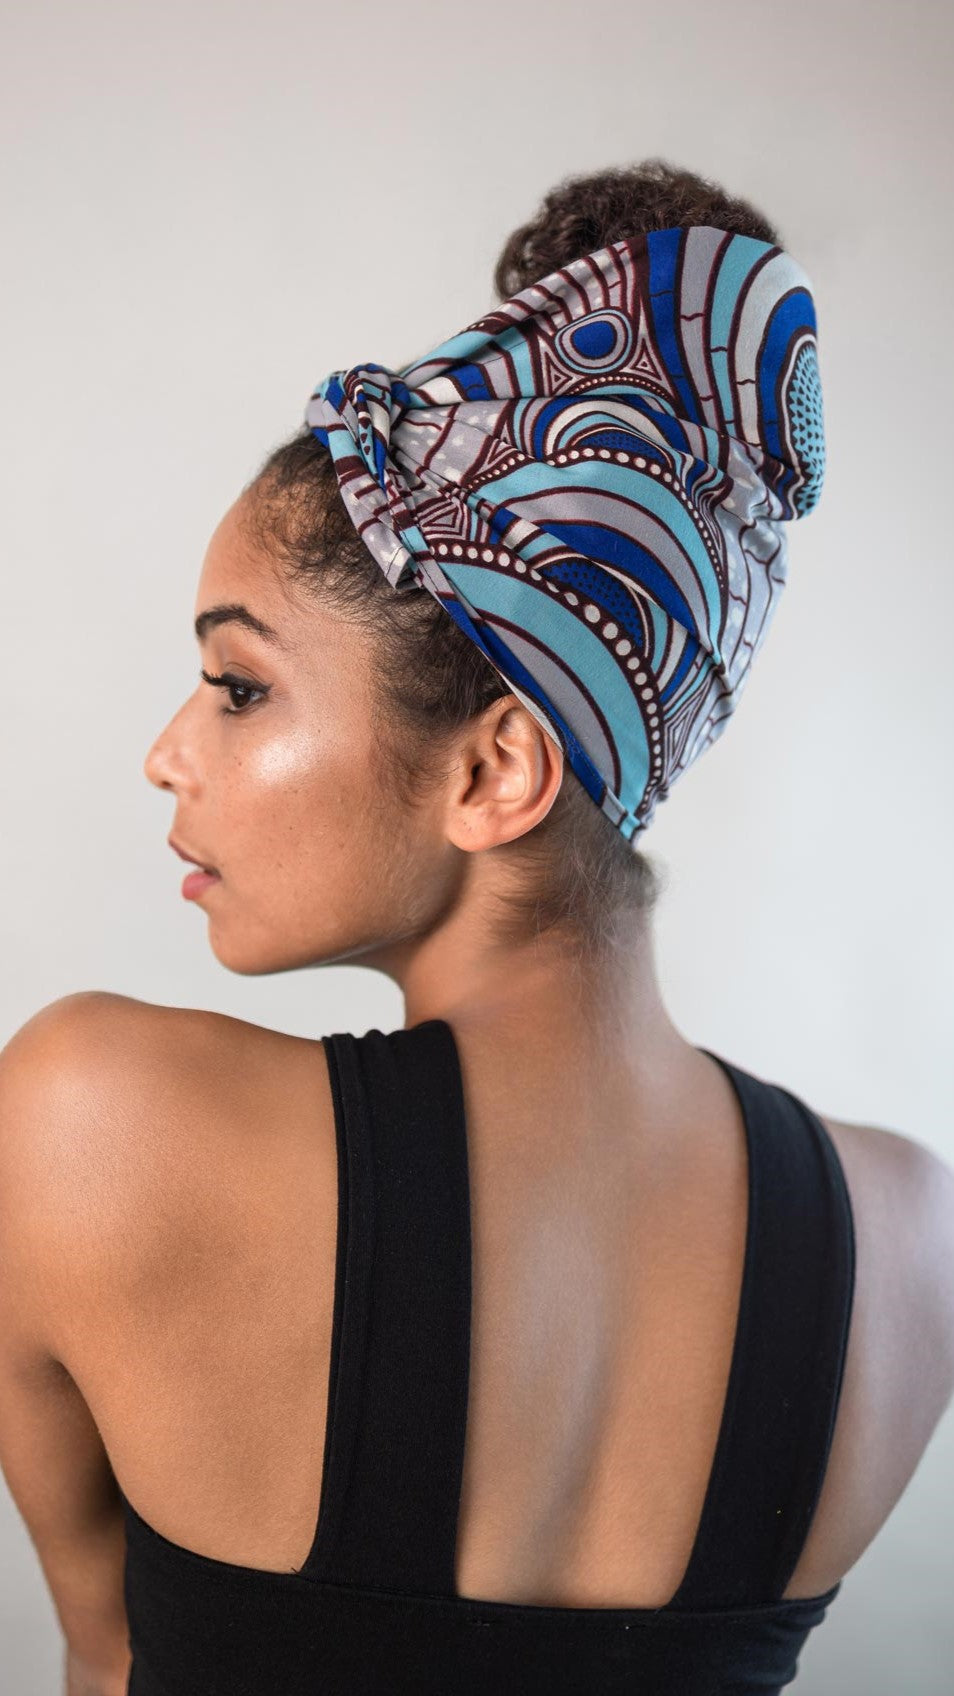 Afrikanisches Wax-Print Kopftuch in der Größe 30x85 von Curly'N'Covered aus Baumwolle in einem Muster aus weißen, blauen und türkisen Farben